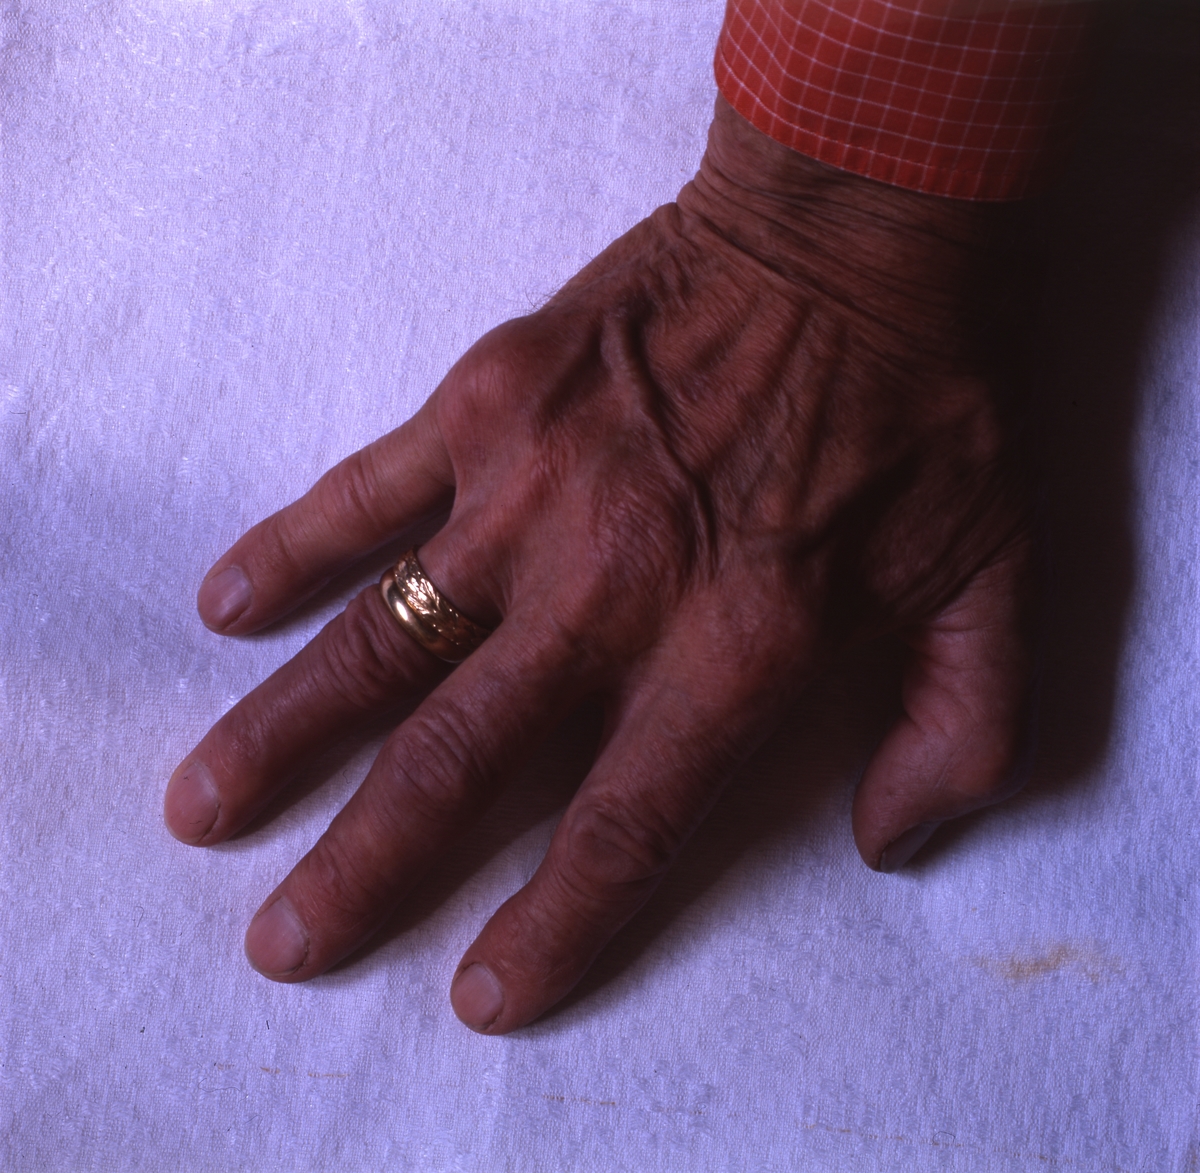 Hildings högra hand med ringar juli 1997.